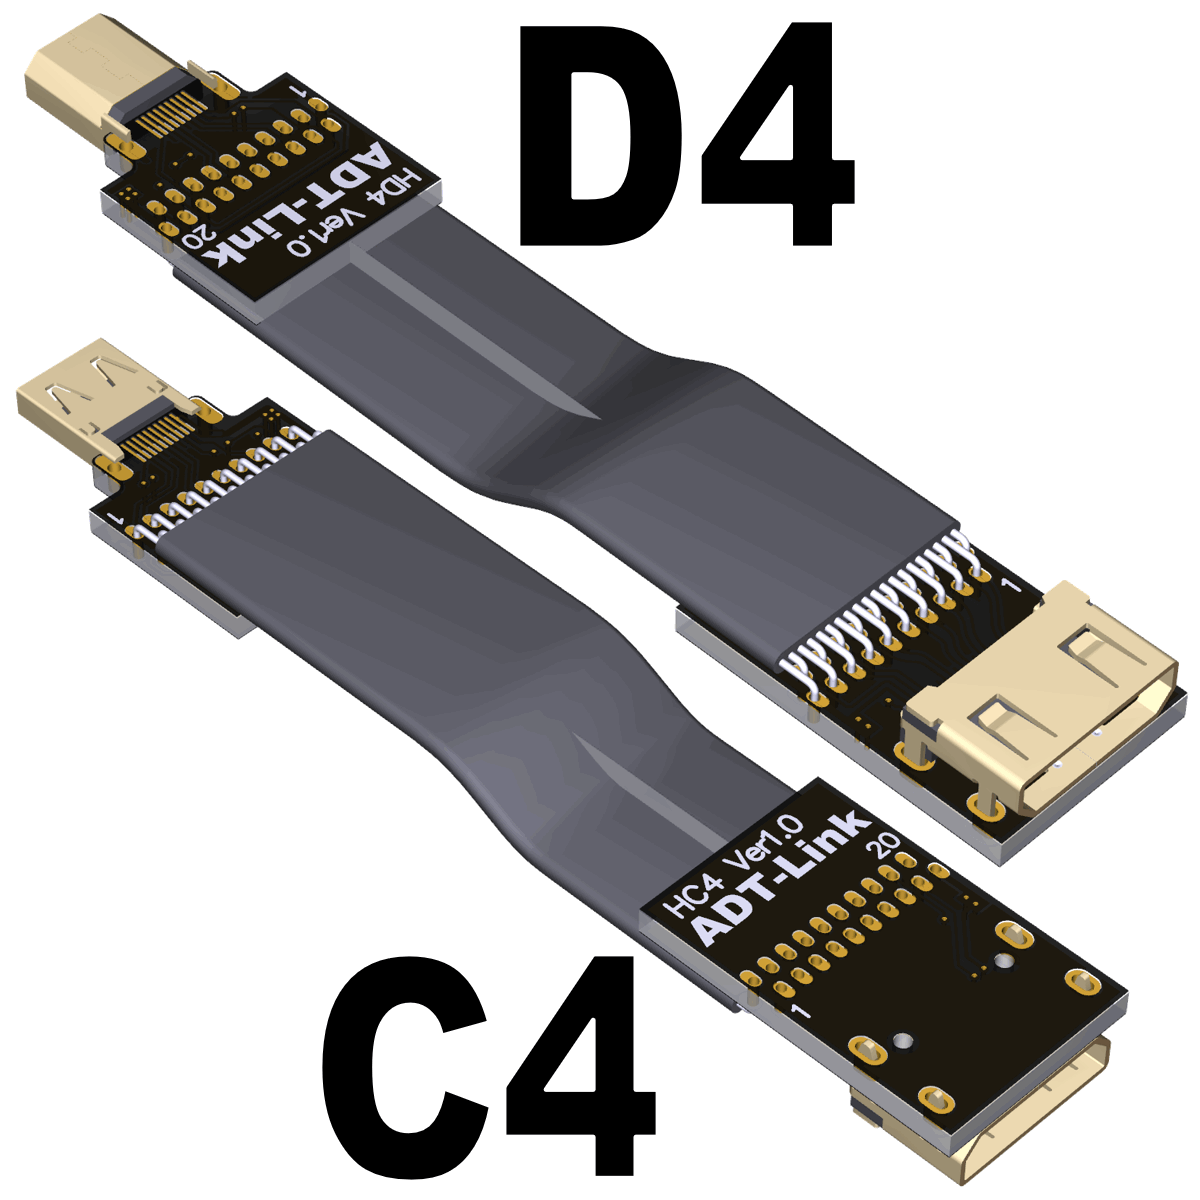 HCD-MF-20P series